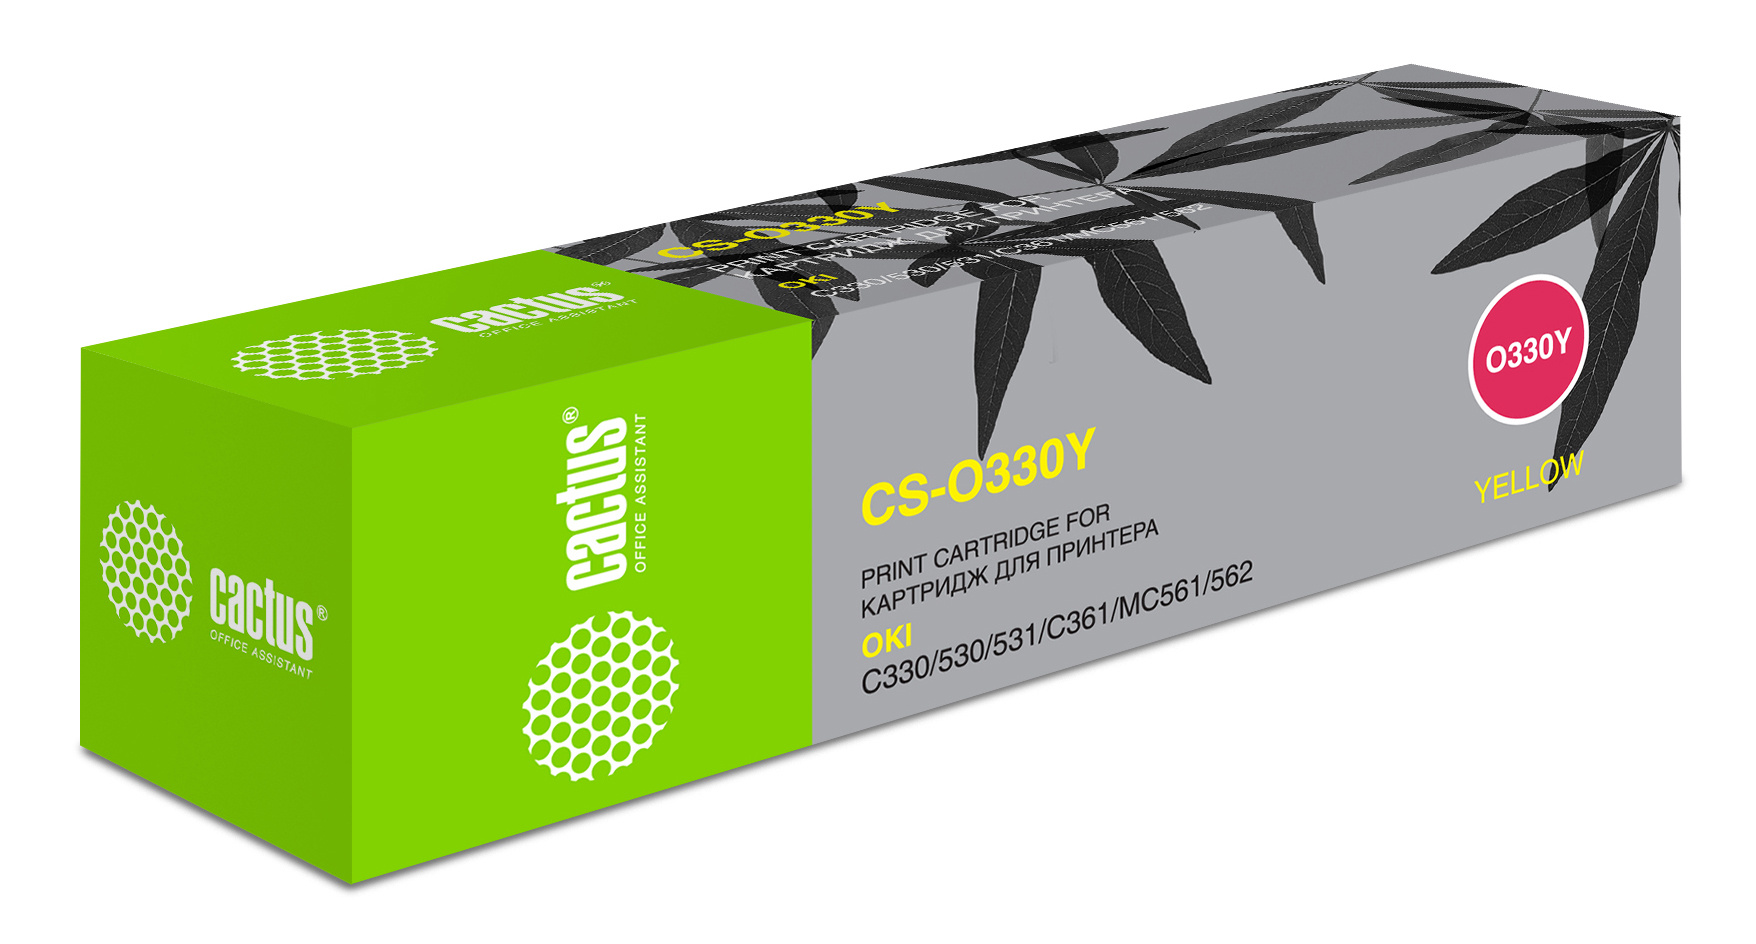 Картридж лазерный Cactus 44469714 CS-O330Y желтый (3000стр.) для Oki C330/C530 цена и фото